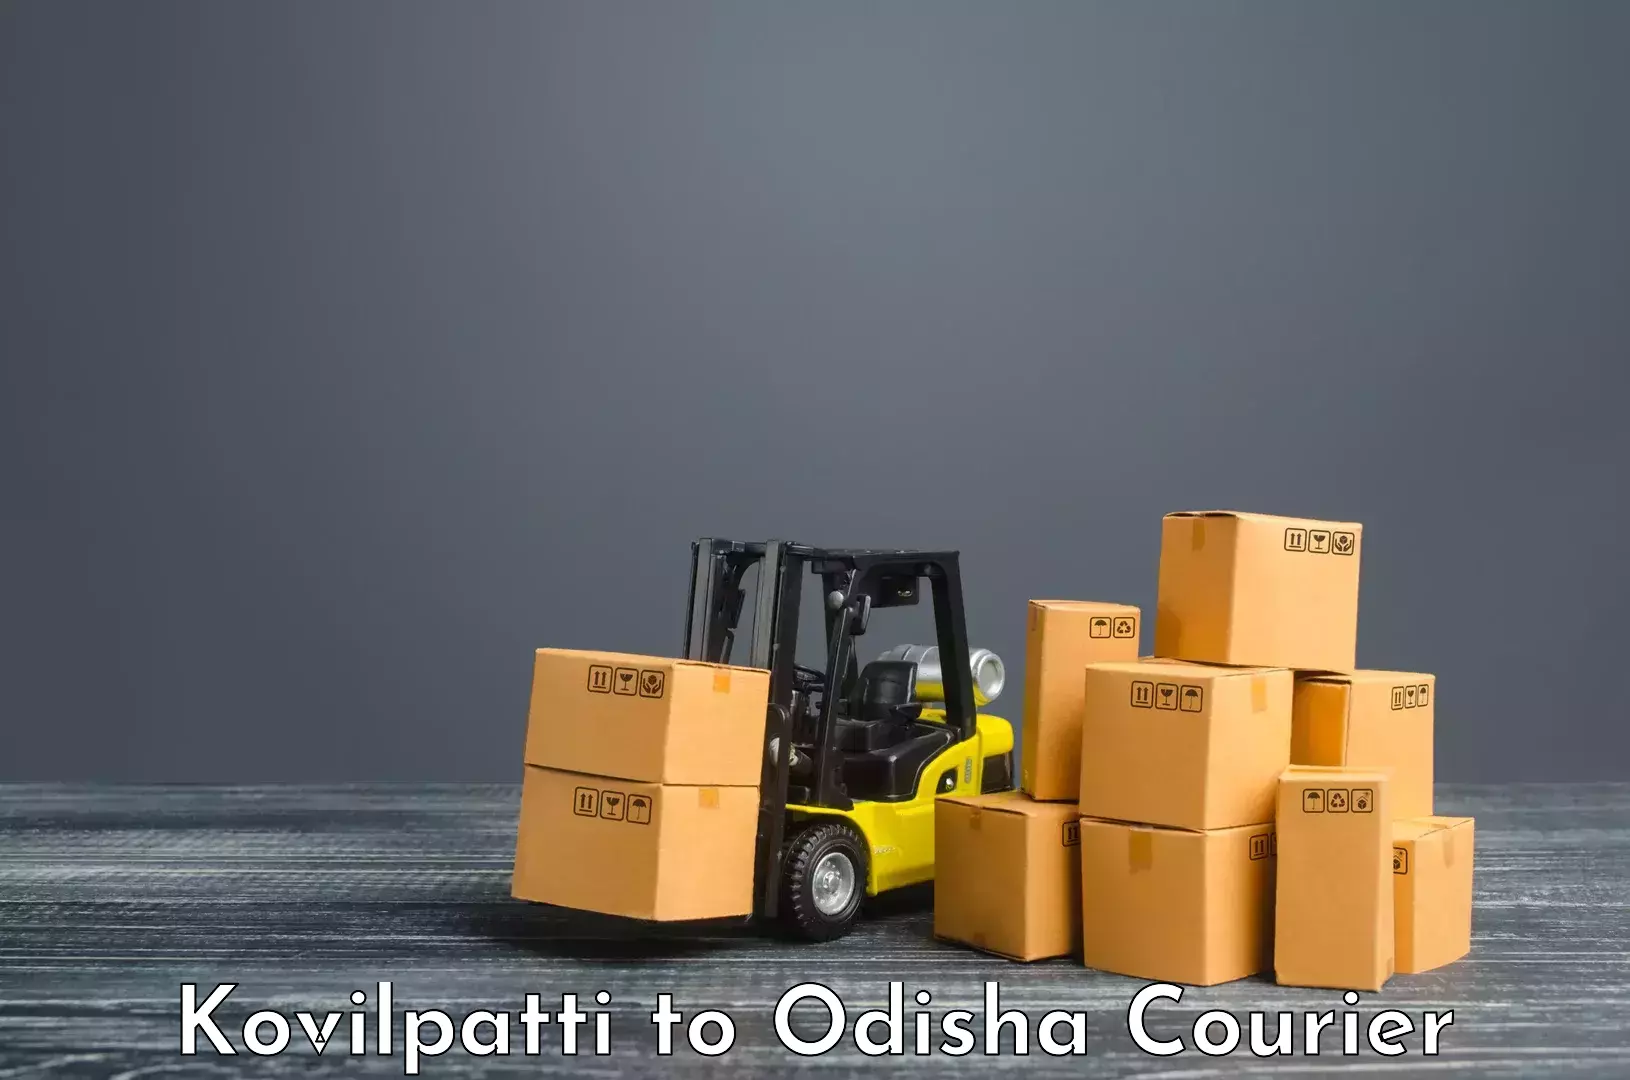 Cash on delivery service Kovilpatti to Koraput